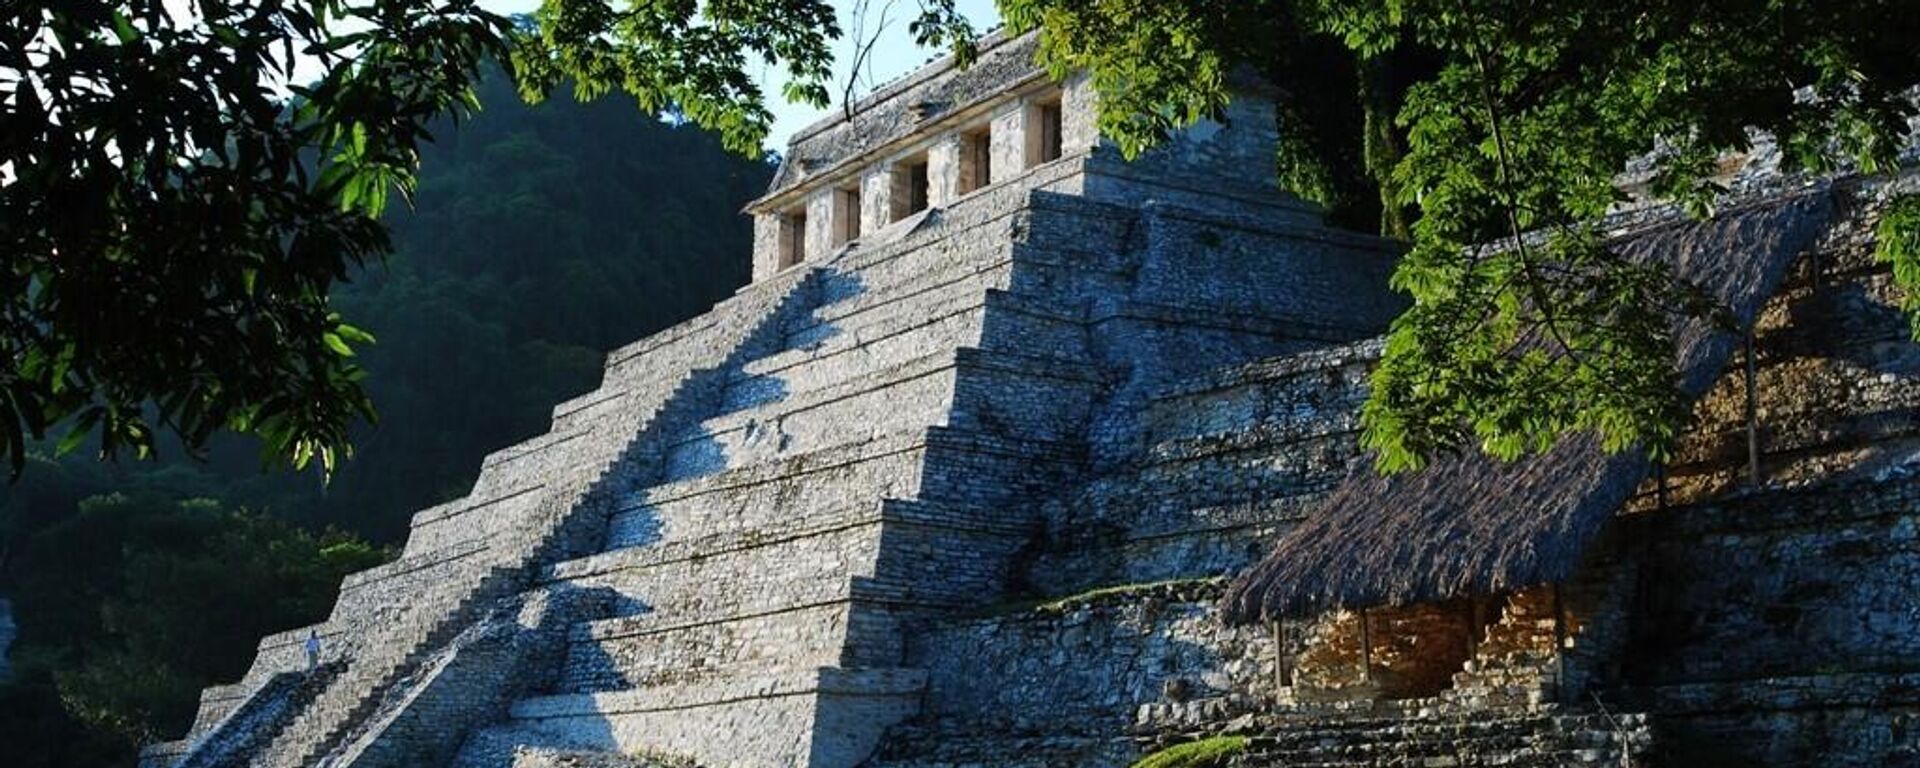 La civilización maya es una de las más importantes del continente americano anterior a la conquista. - Sputnik Mundo, 1920, 23.06.2022